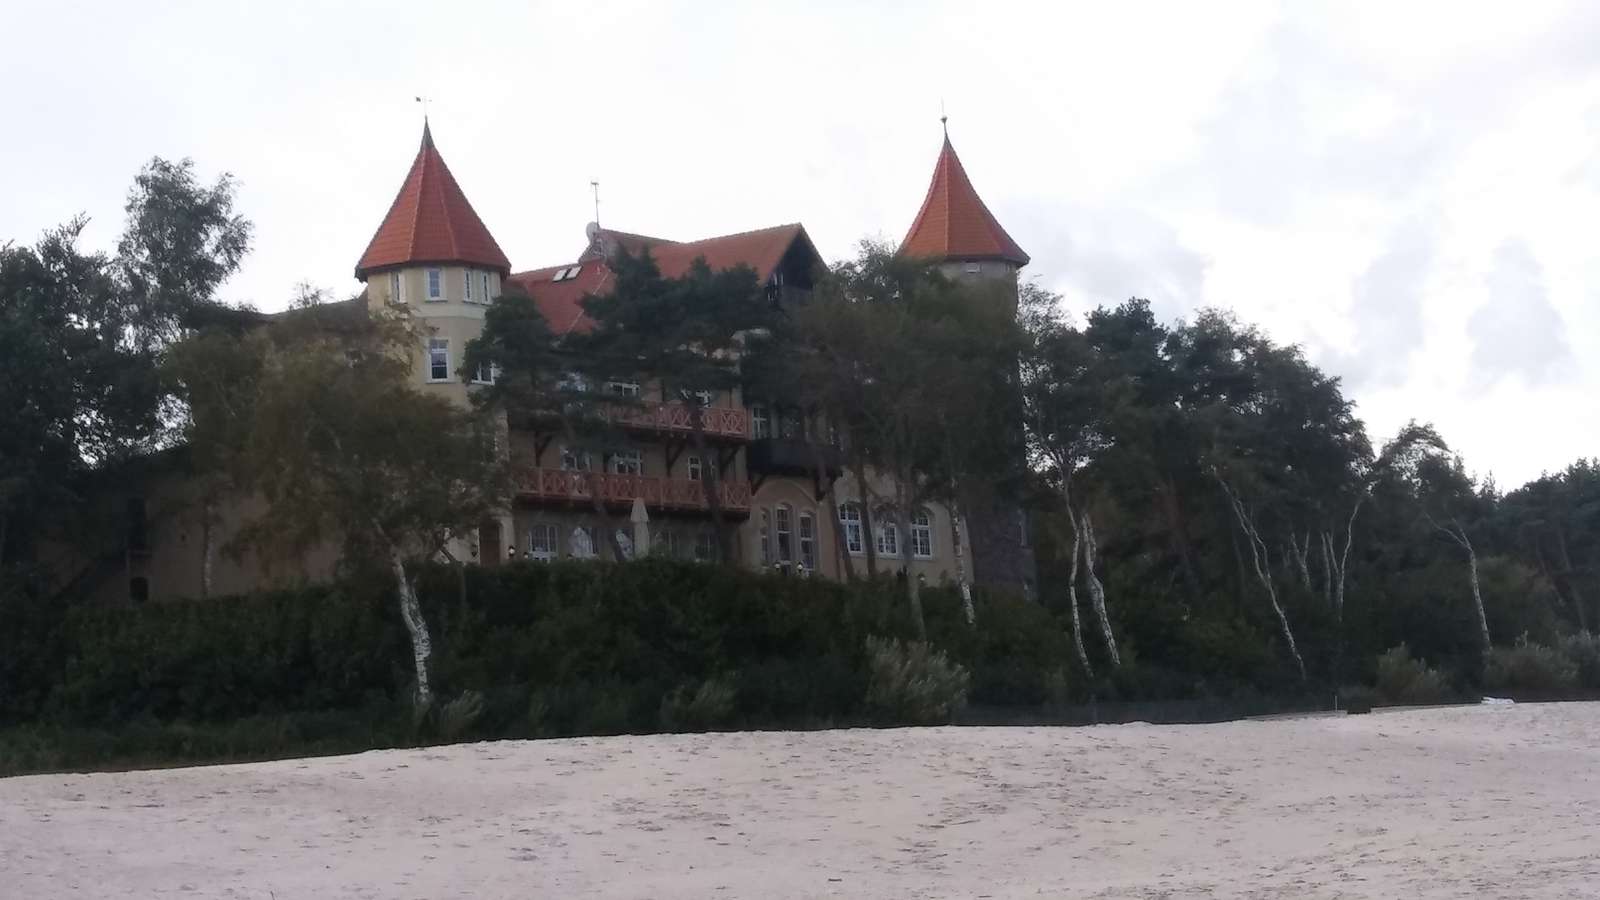 Castelul de pe plajă jigsaw puzzle online